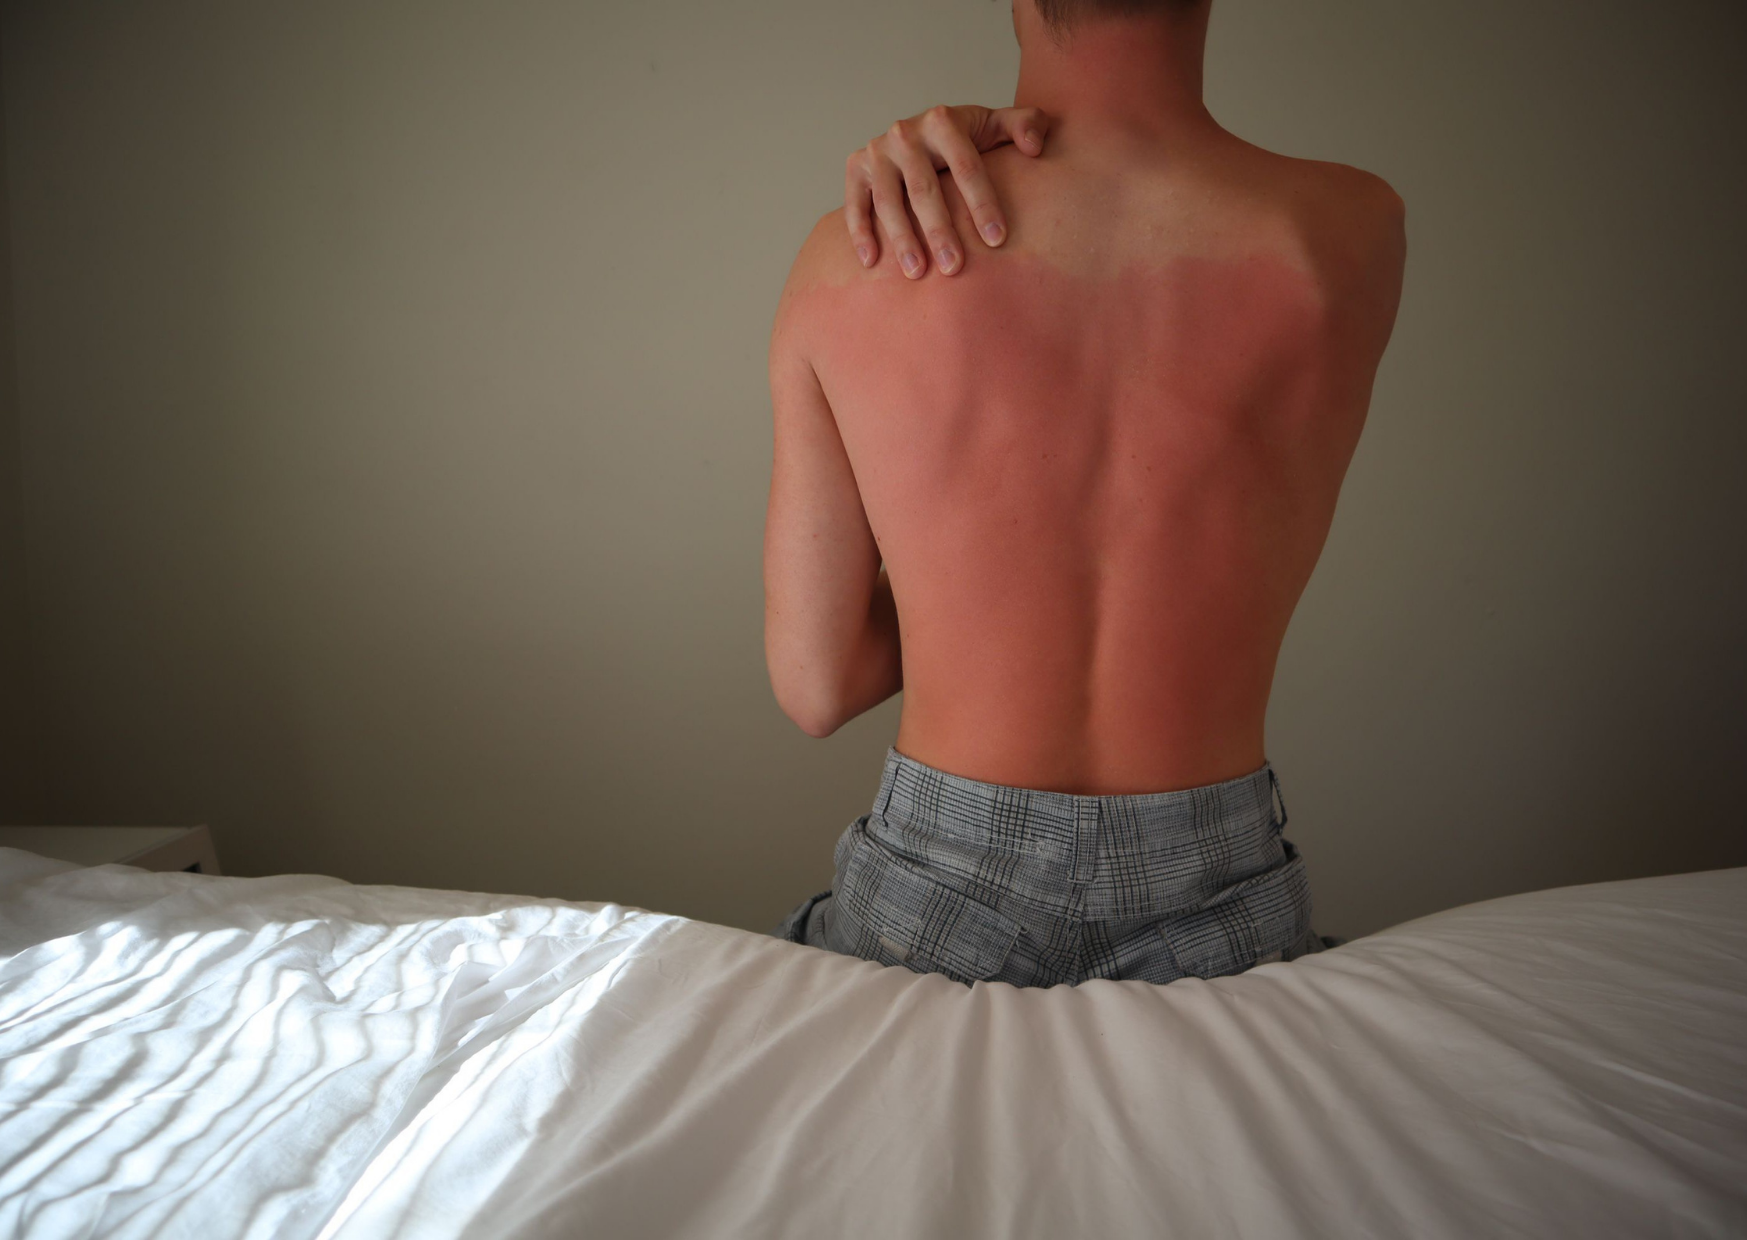 Zonschade huid herstellen, man met een zonverbranding op de rug